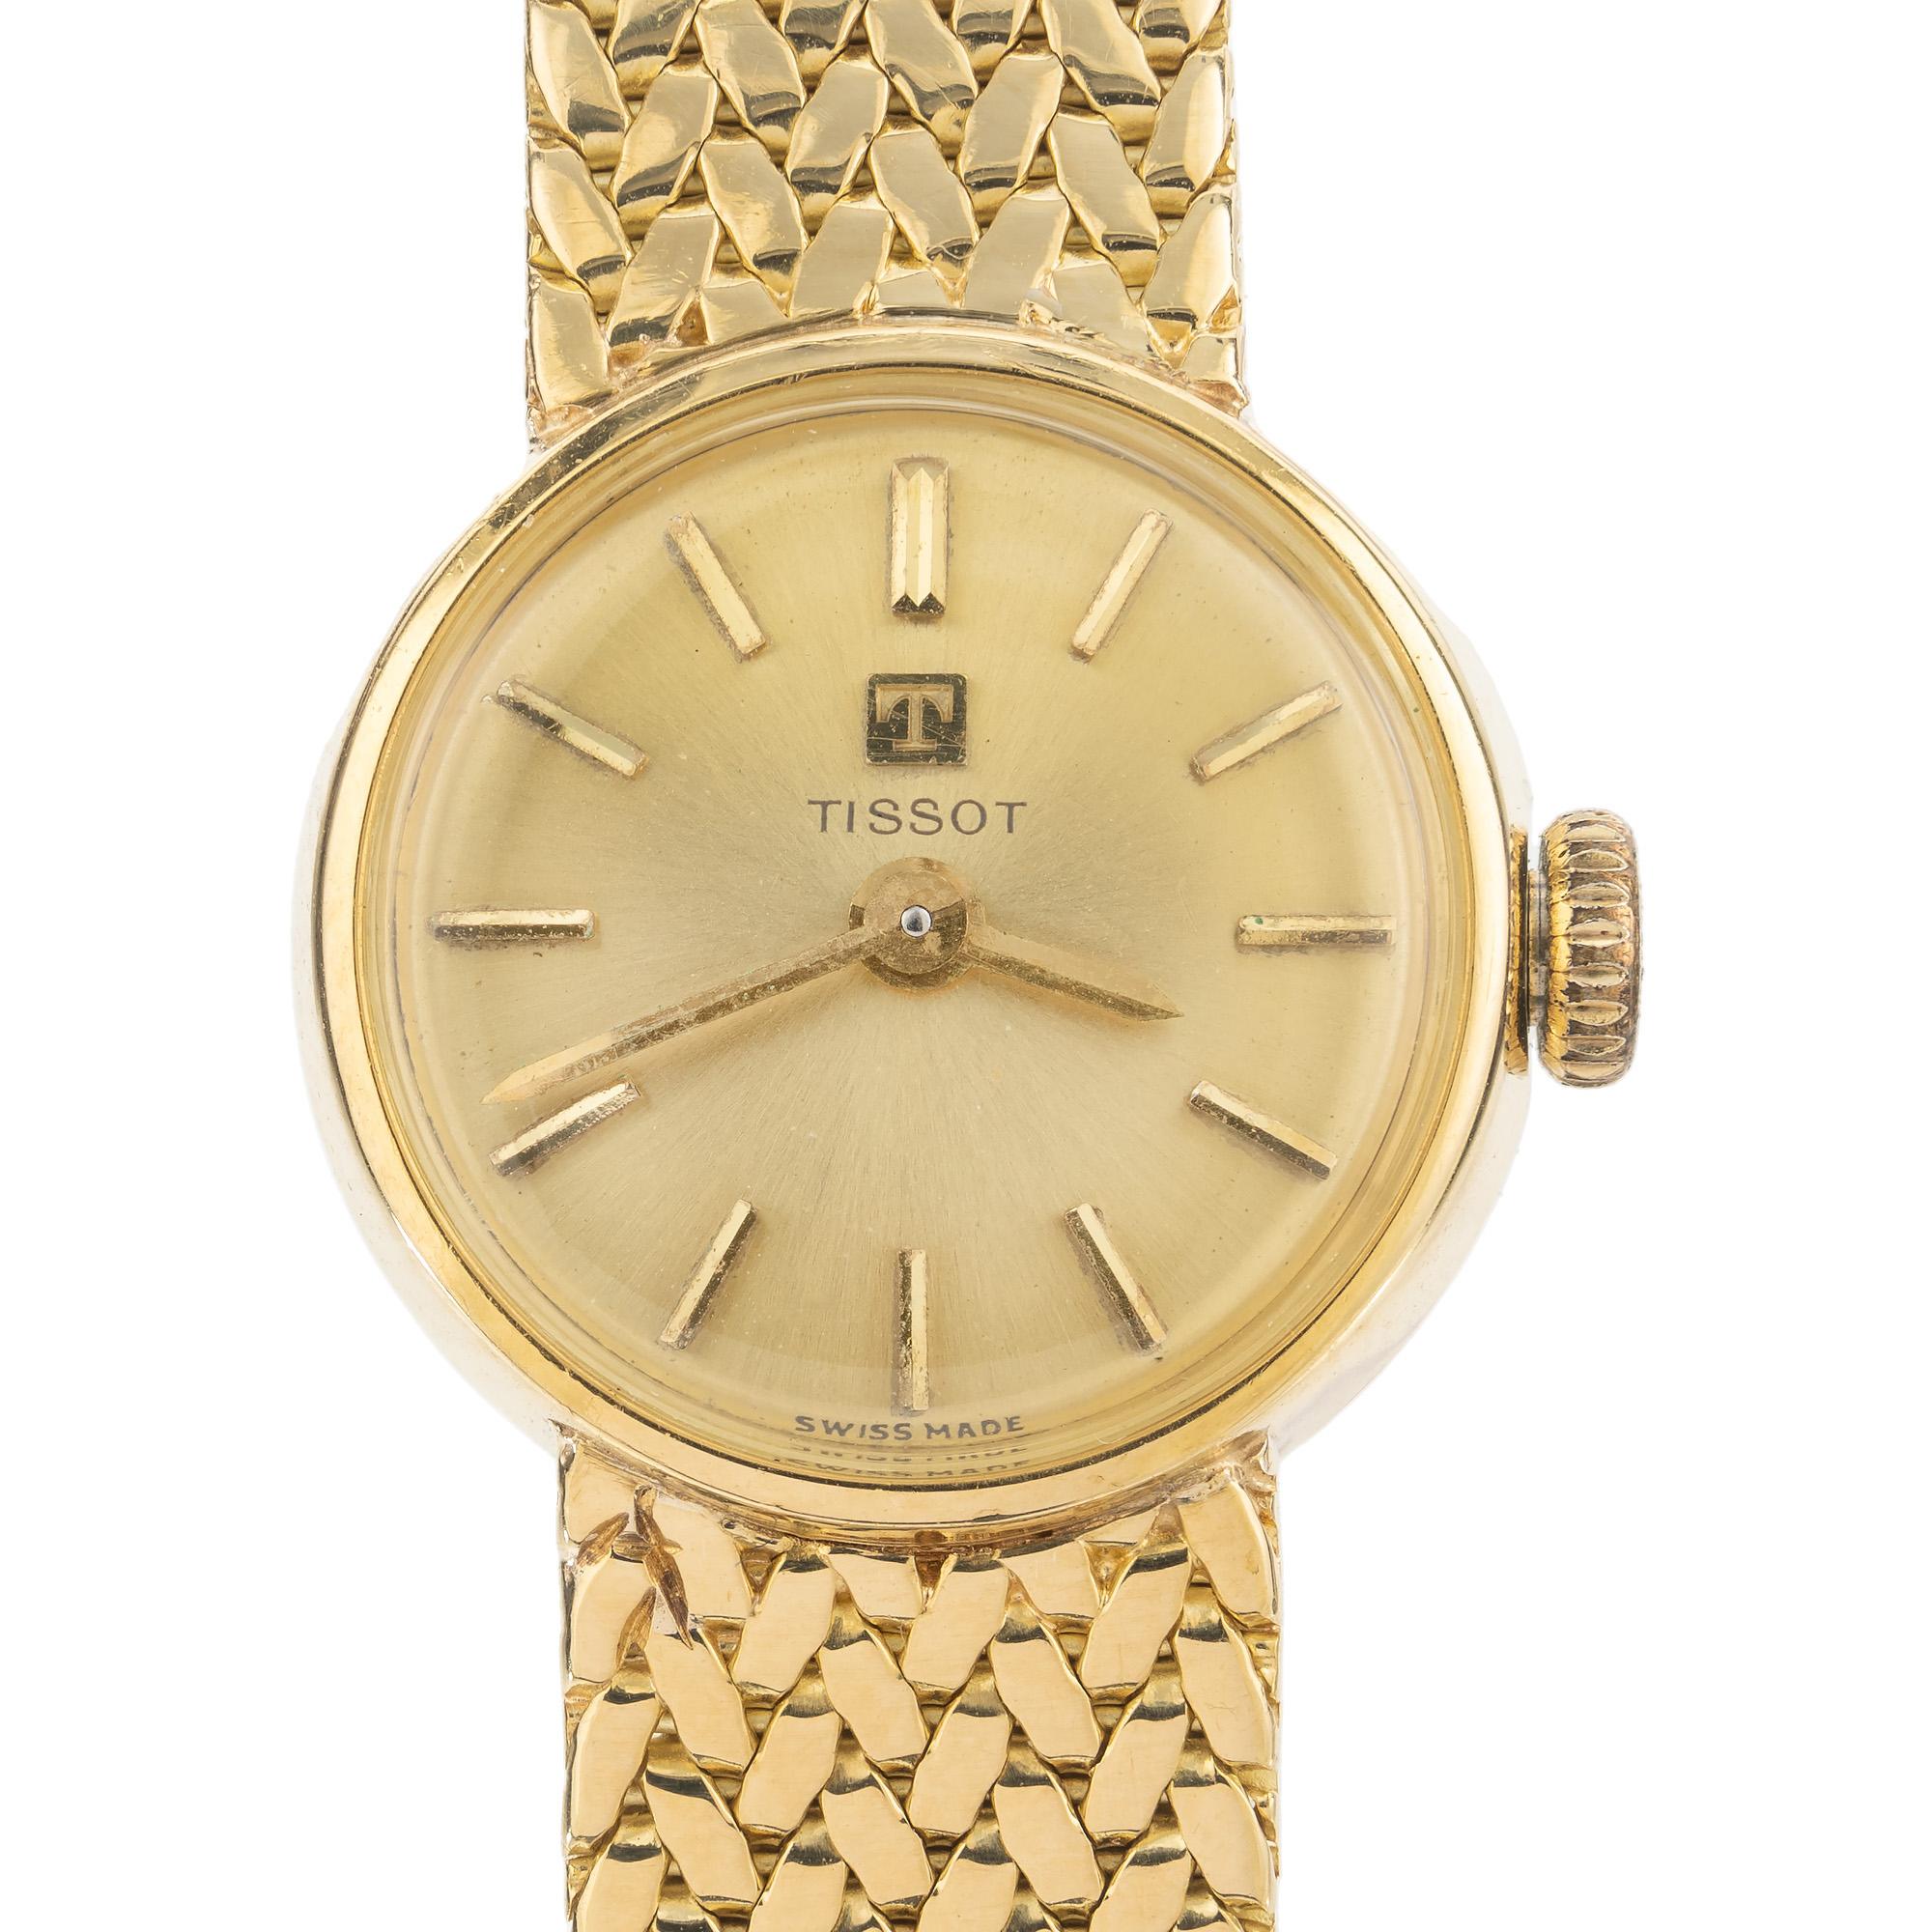 La montre-bracelet Tissot des années 1980 en or jaune 17 rubis pour dames est un garde-temps exquis qui allie parfaitement élégance et fonctionnalité. Le cadran en or jaune affiche une esthétique minimaliste, avec des index fins et des aiguilles